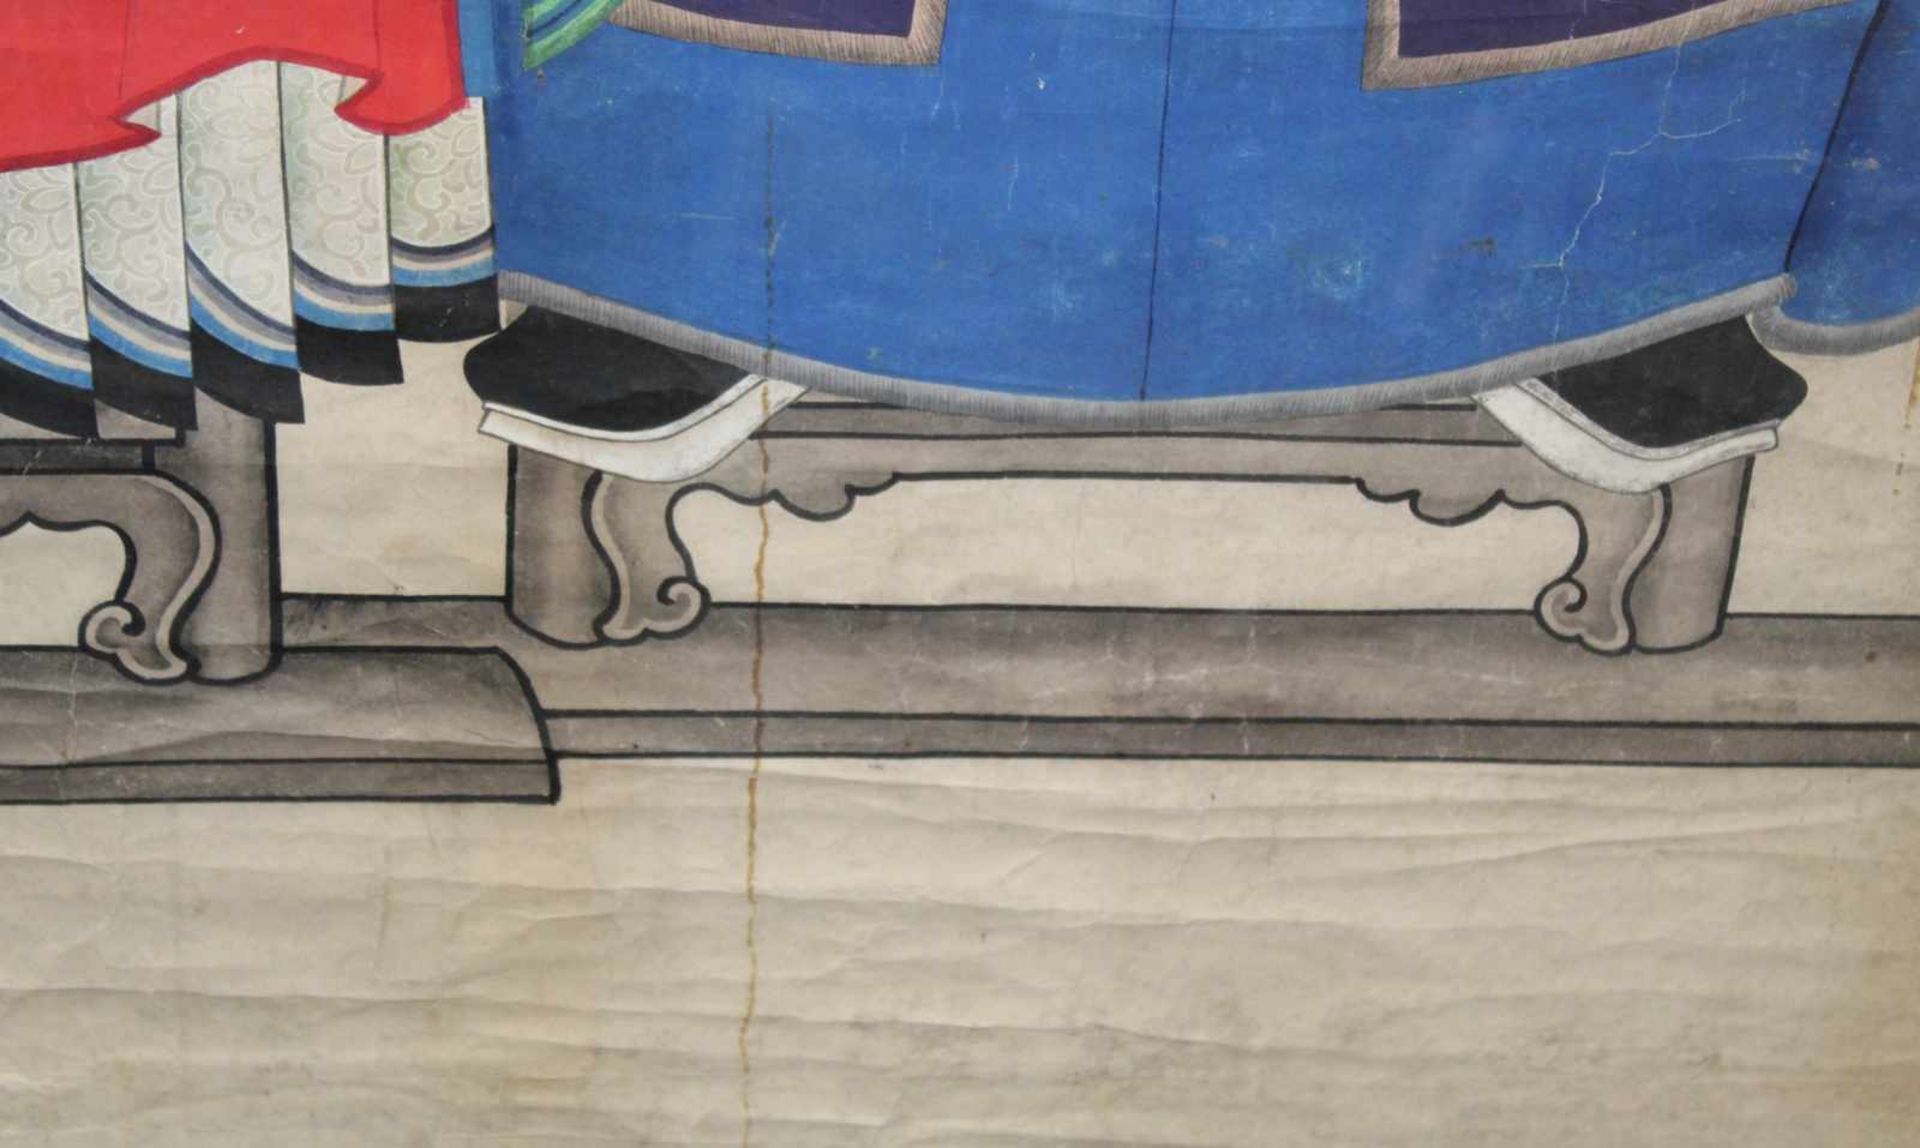 Ahnenbild. Ein Beamter und eine Frau. China.120 cm x 80 cm. Aquarell / Guache auf Papier, gemalt. - Bild 9 aus 9